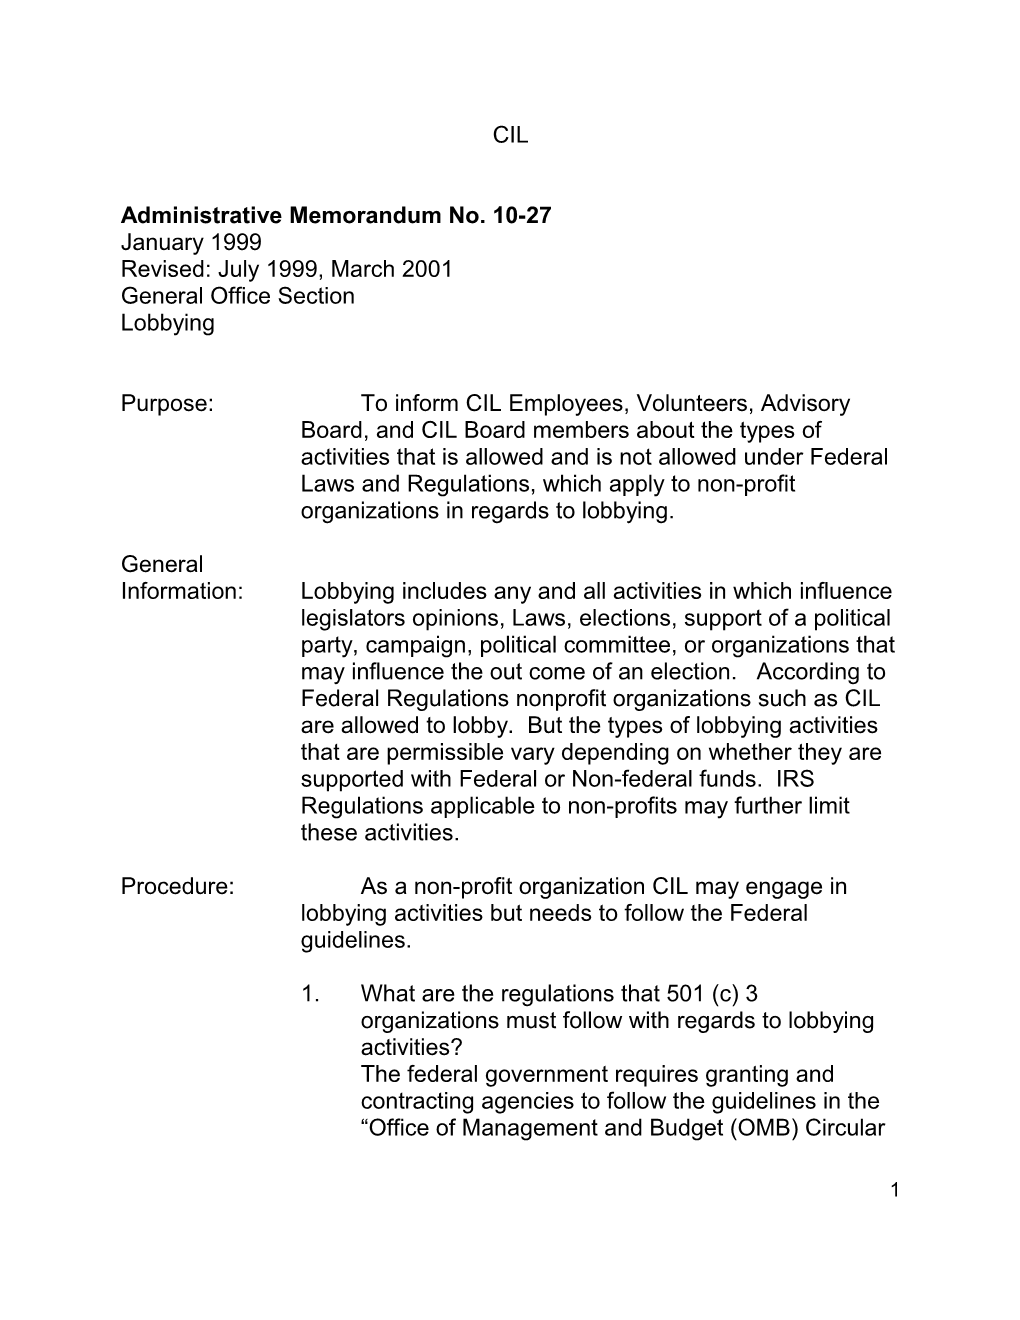 Administrative Memorandum No. 10-27